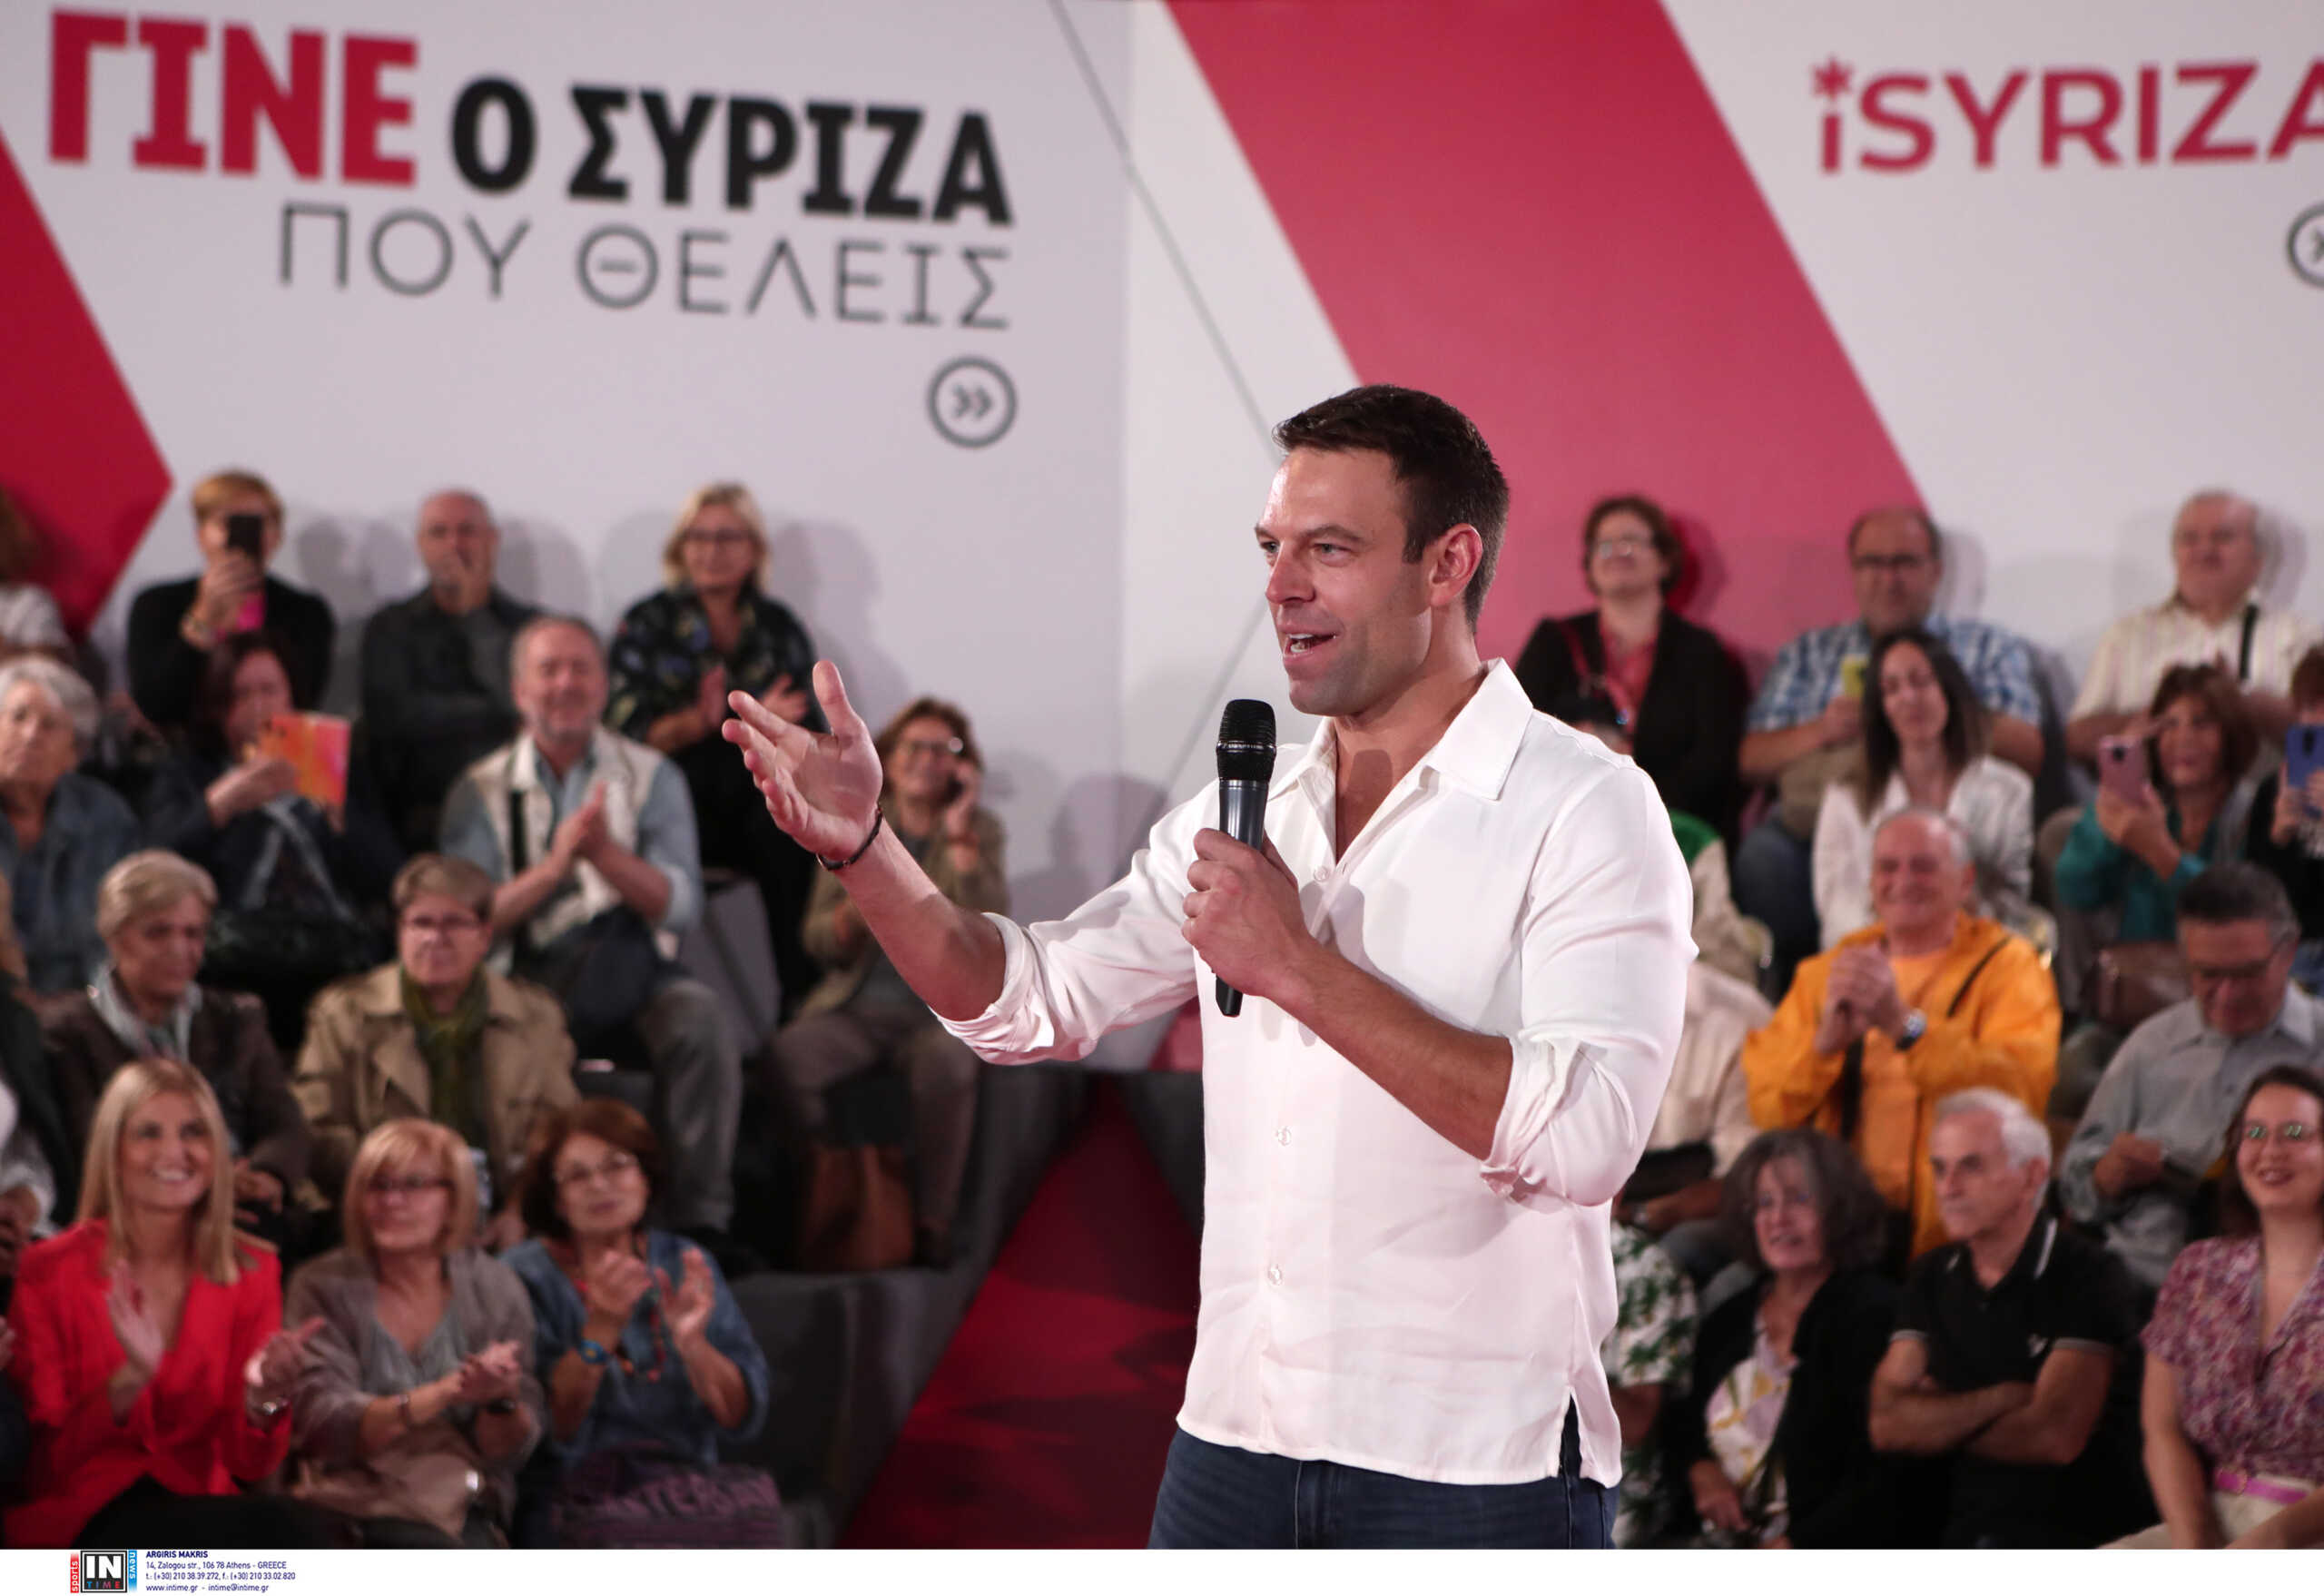 ΣΥΡΙΖΑ: Το αριστερόμετρο του Στέφανου Κασσελάκη και το συνέδριο που μεταφέρεται μετά τις ευρωεκλογές